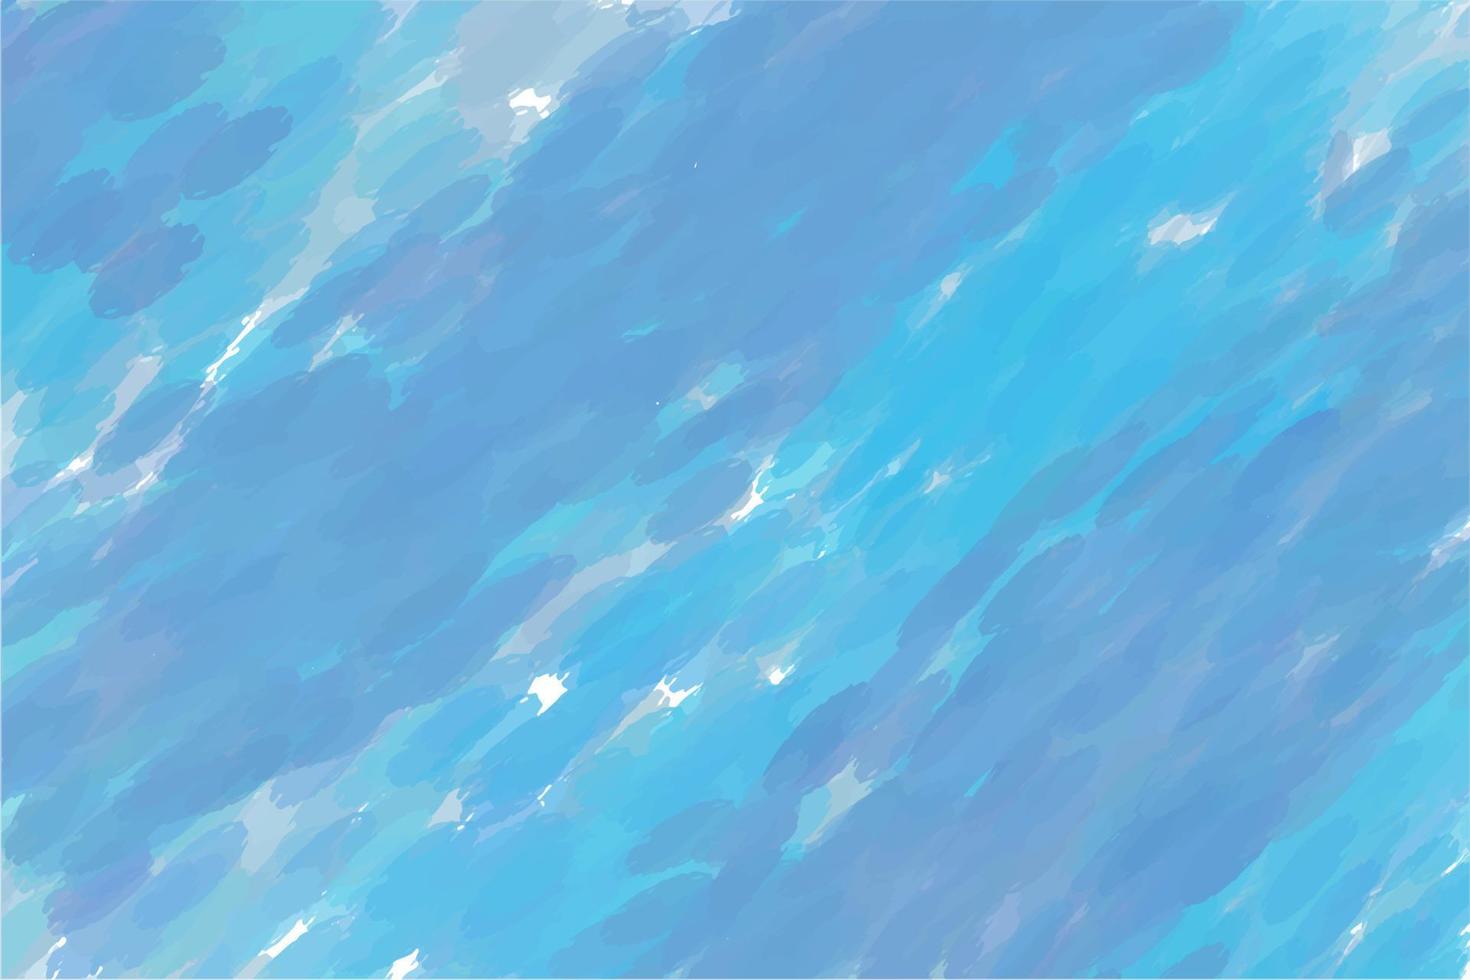 aquarellhintergrund in blautönen, mit ausgeprägten strichen auf einer weißen leinwand, blaue lagune, meeresbrise, hintergrund für ein banner vektor